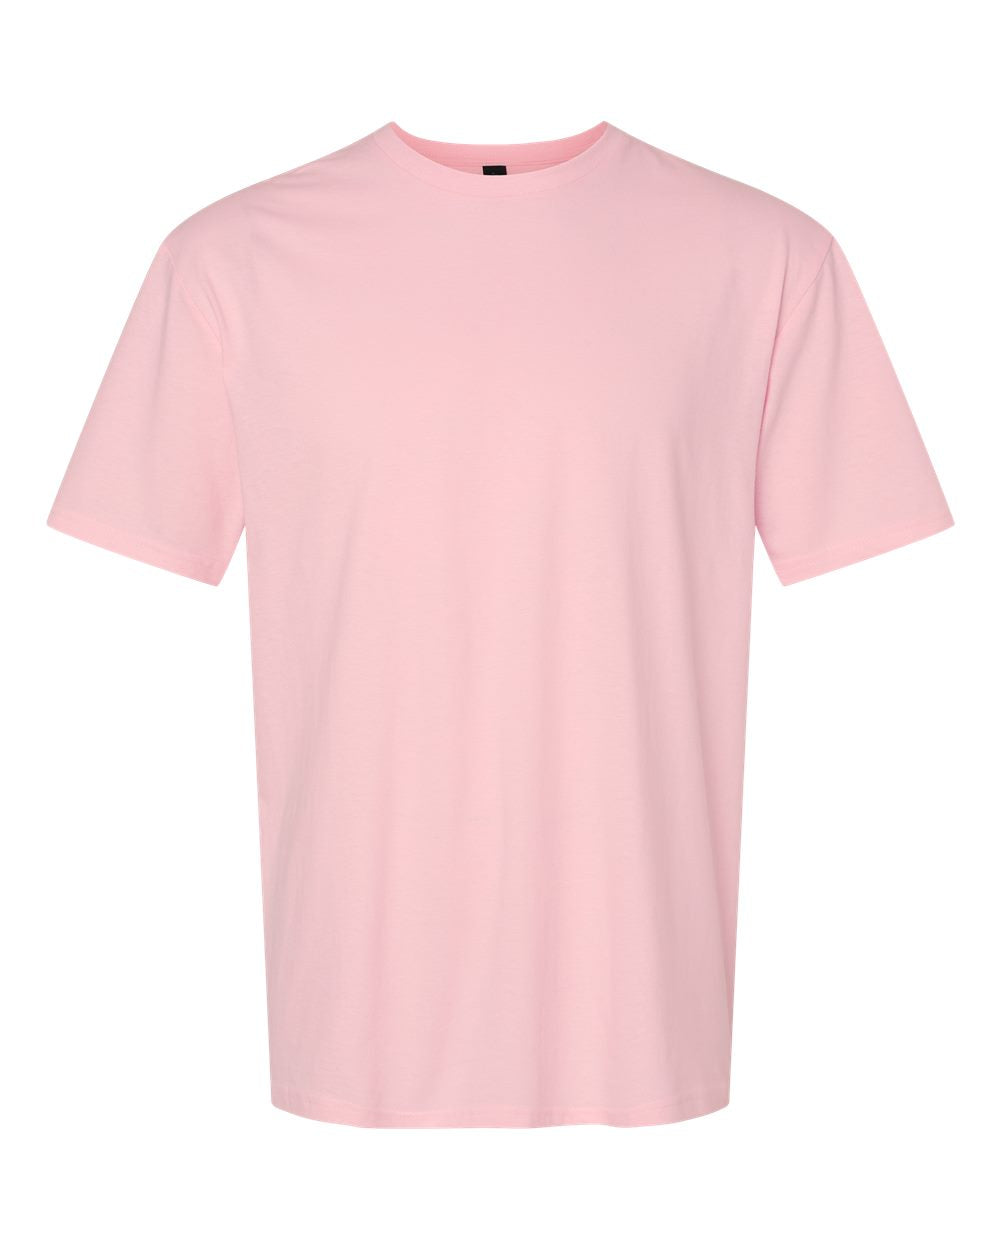 Mini & Mama Pink & Black Puff Matching Shirts